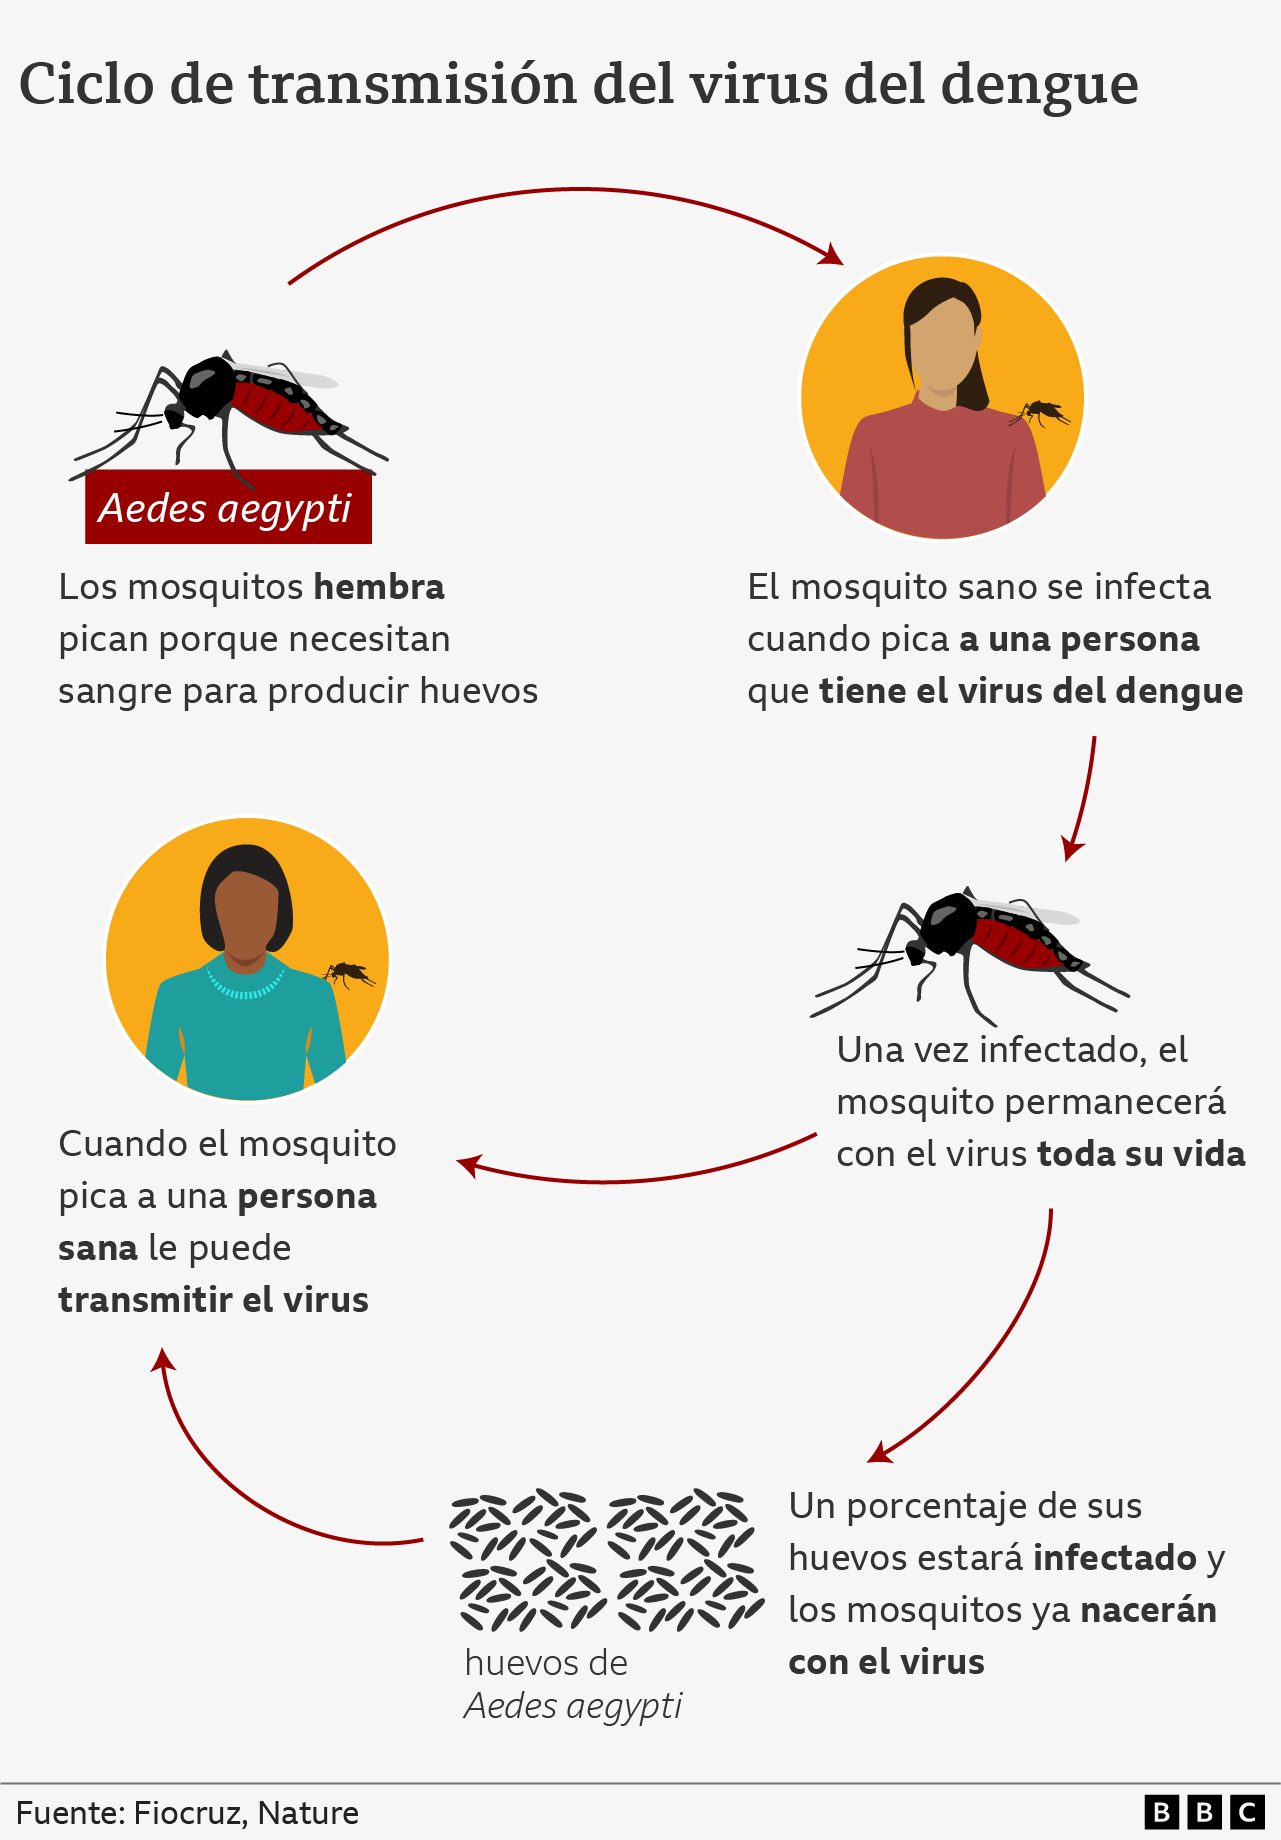 Gráfico con el ciclo de transmisión del virus del dengue